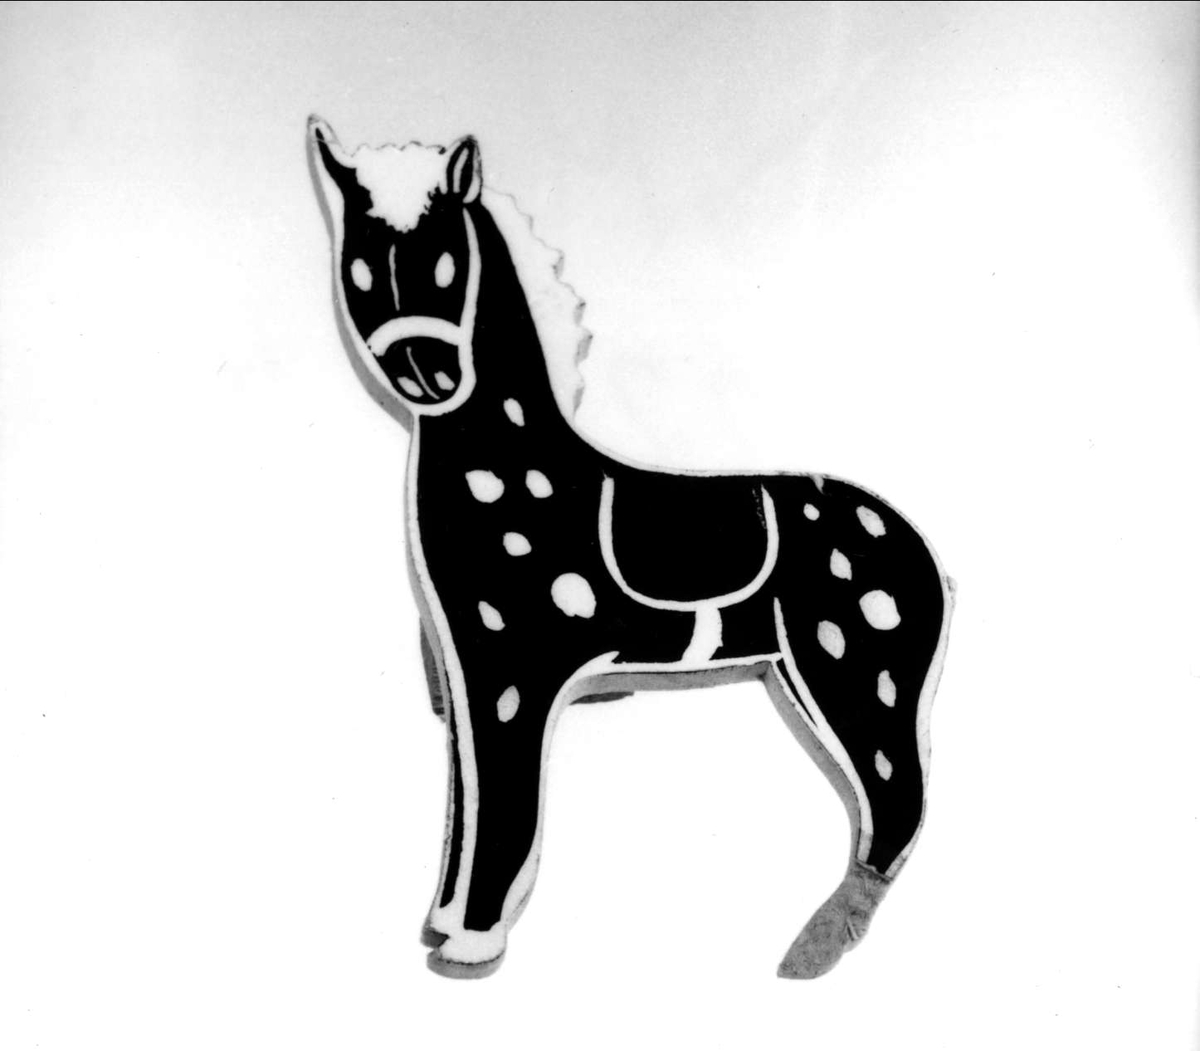 Reklamhäst av treplexplatta, bemålad svart och vit på en sida. Från Hästens skofabrik.